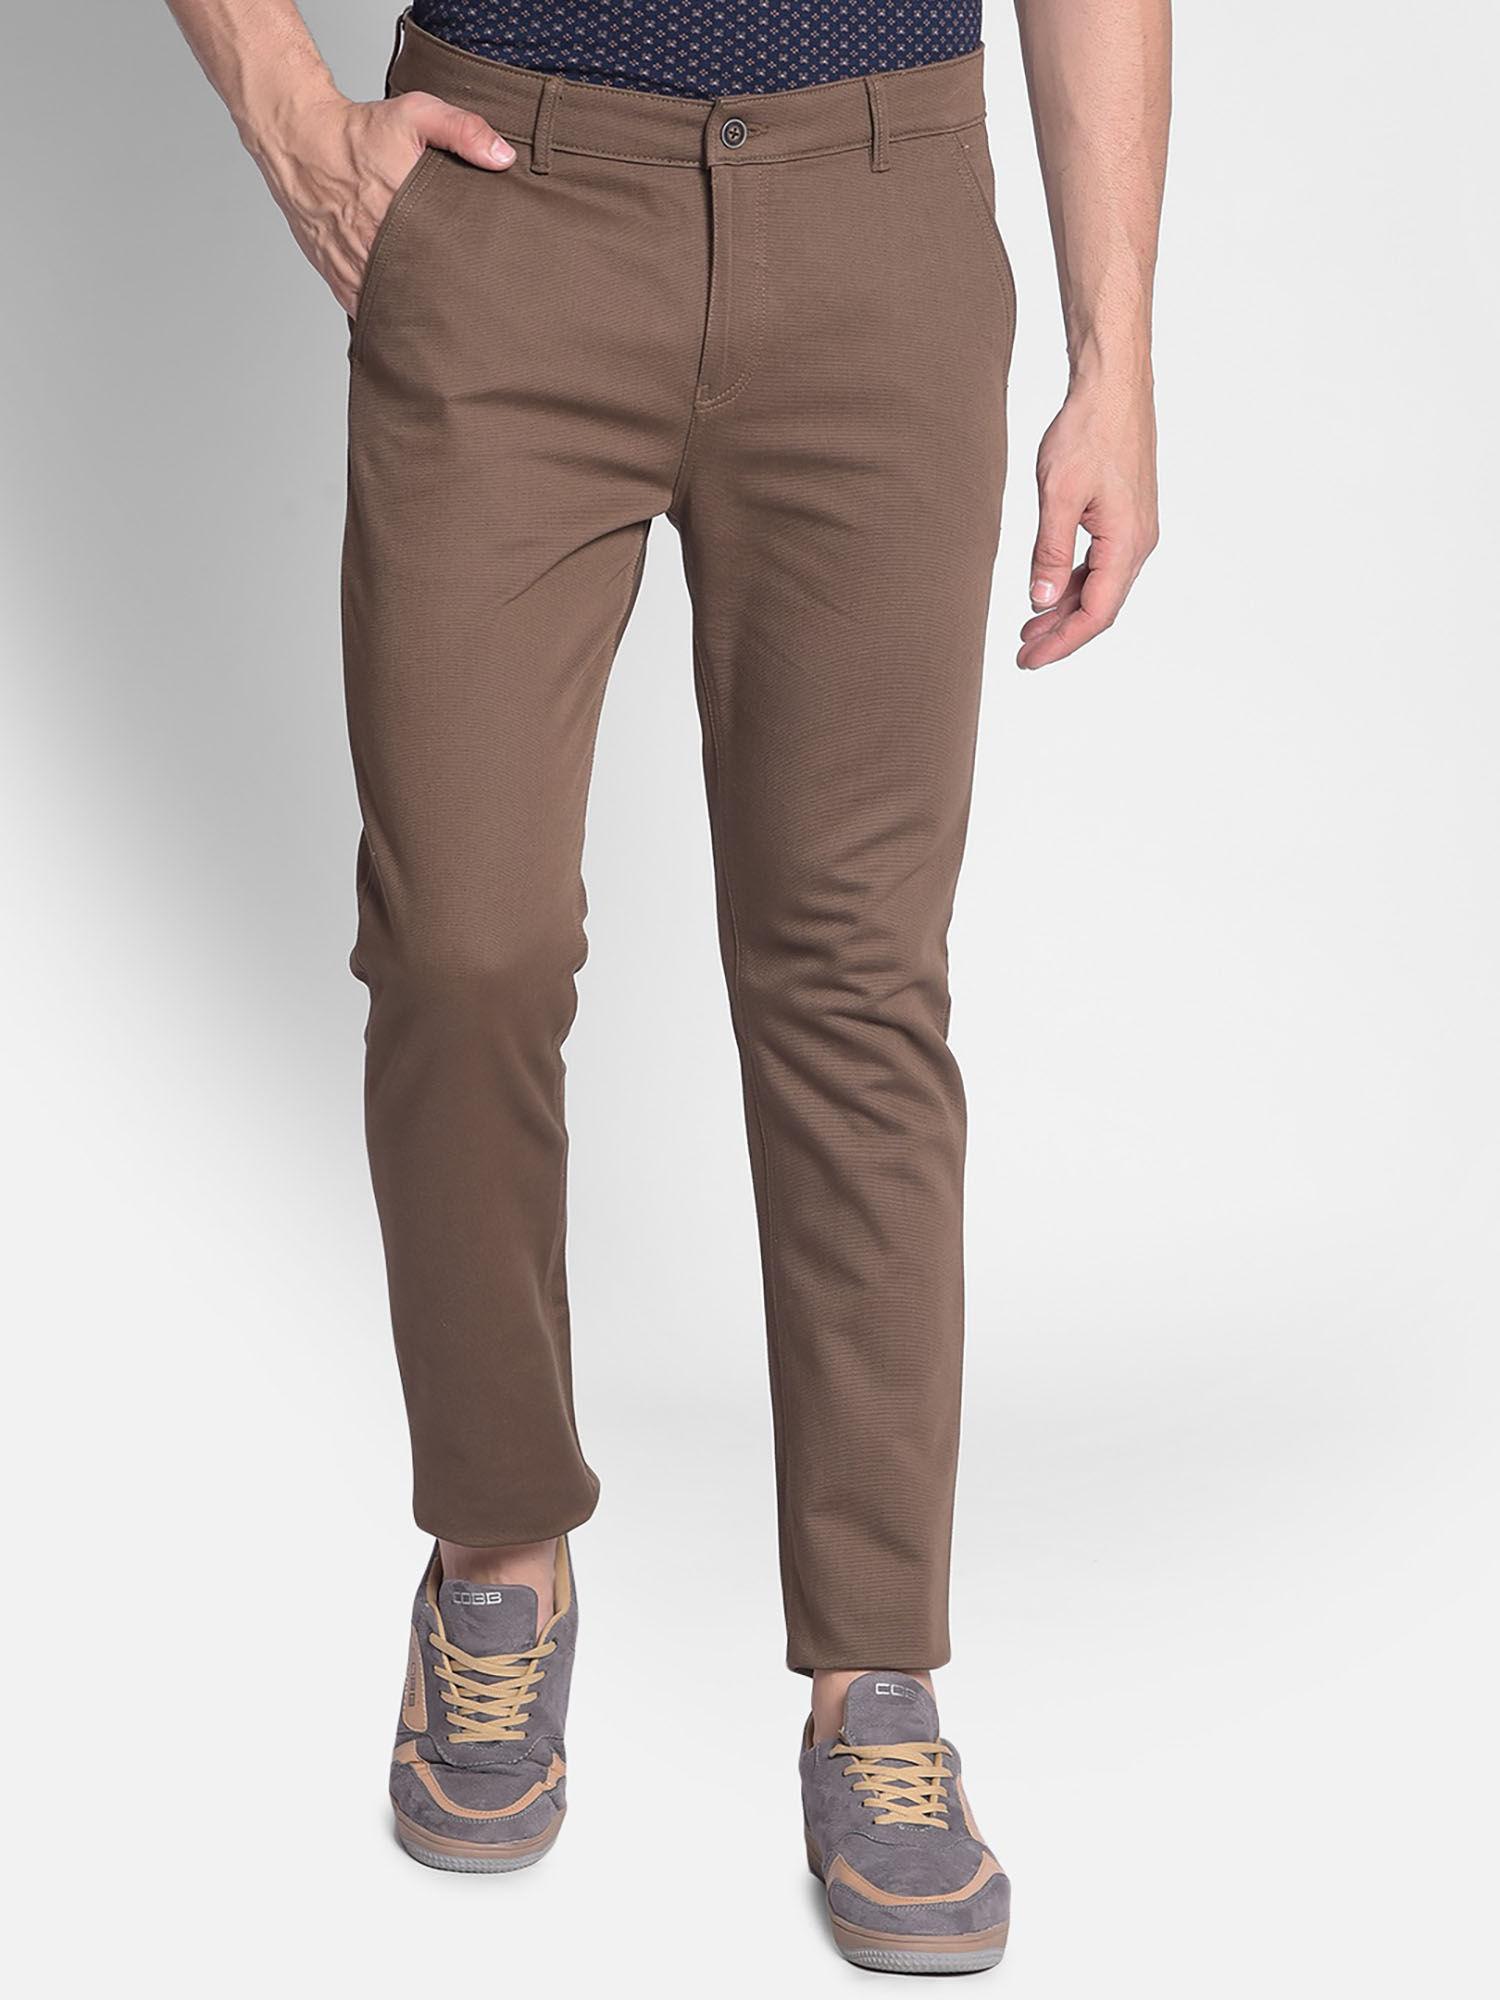 mens-brown-trouser